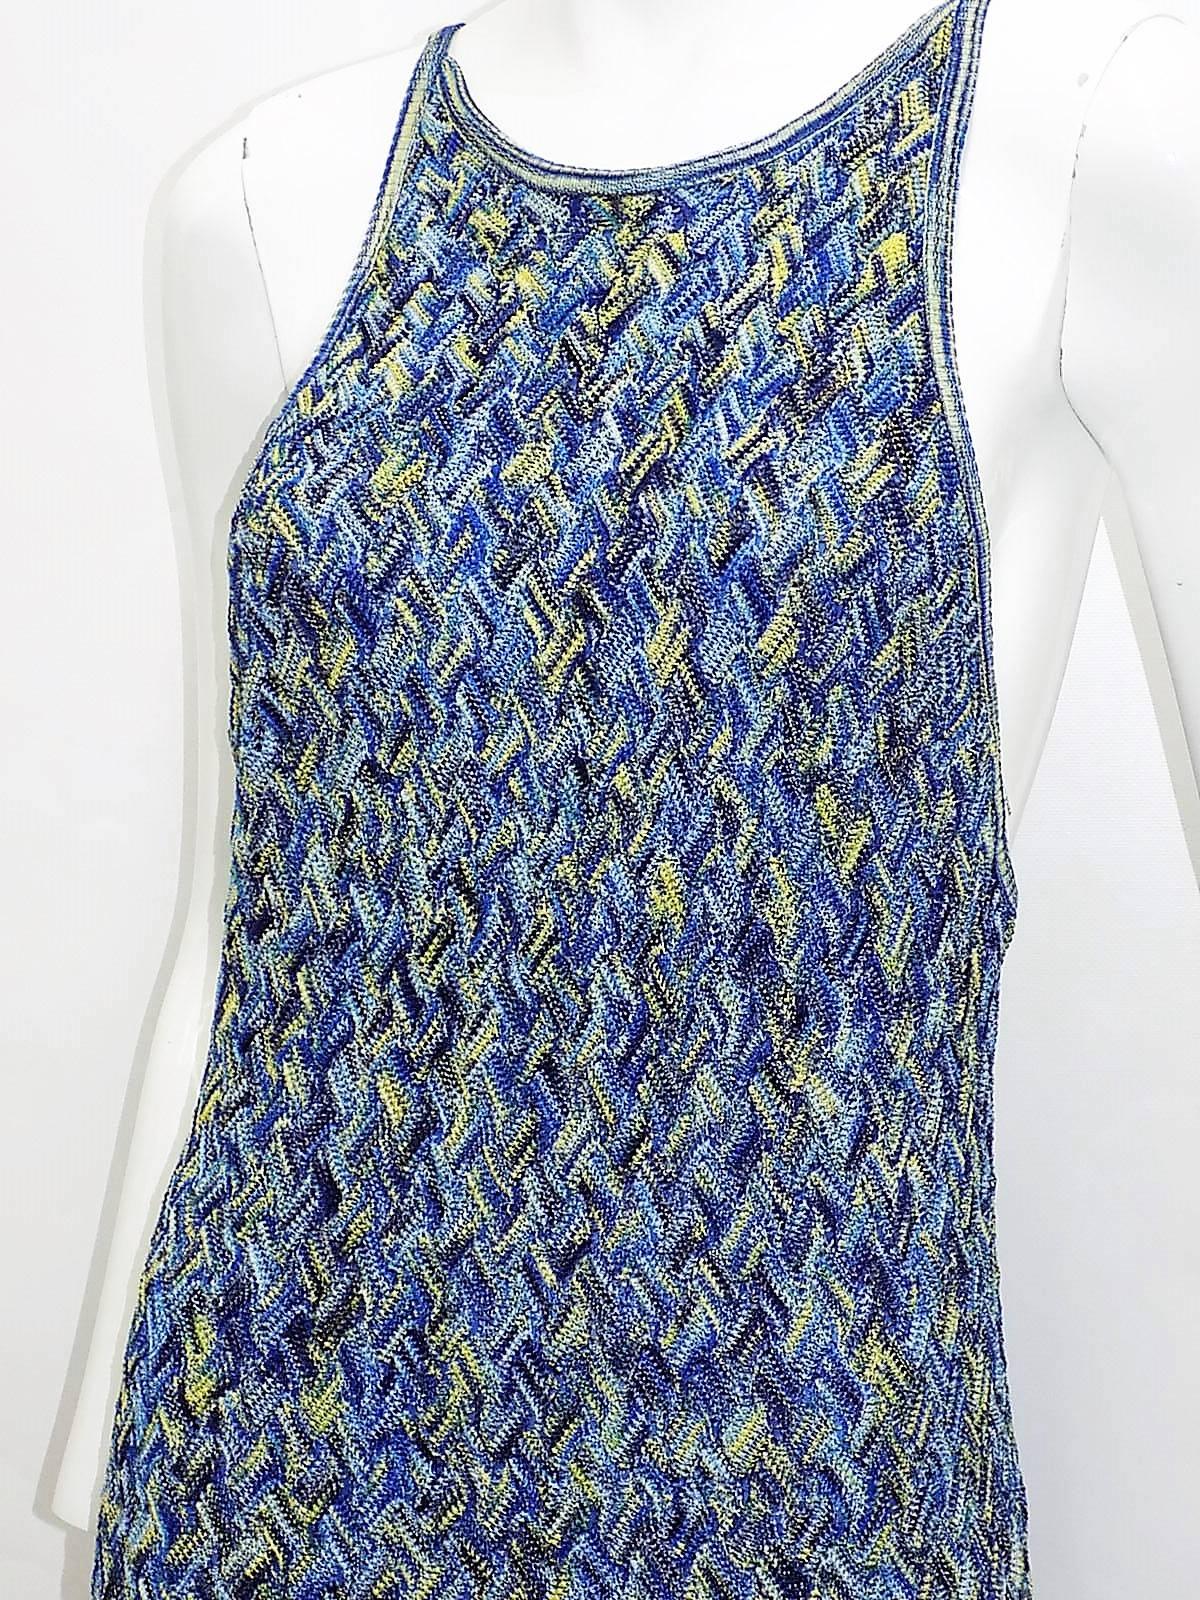  Missoni maxi vintage knit dress  1